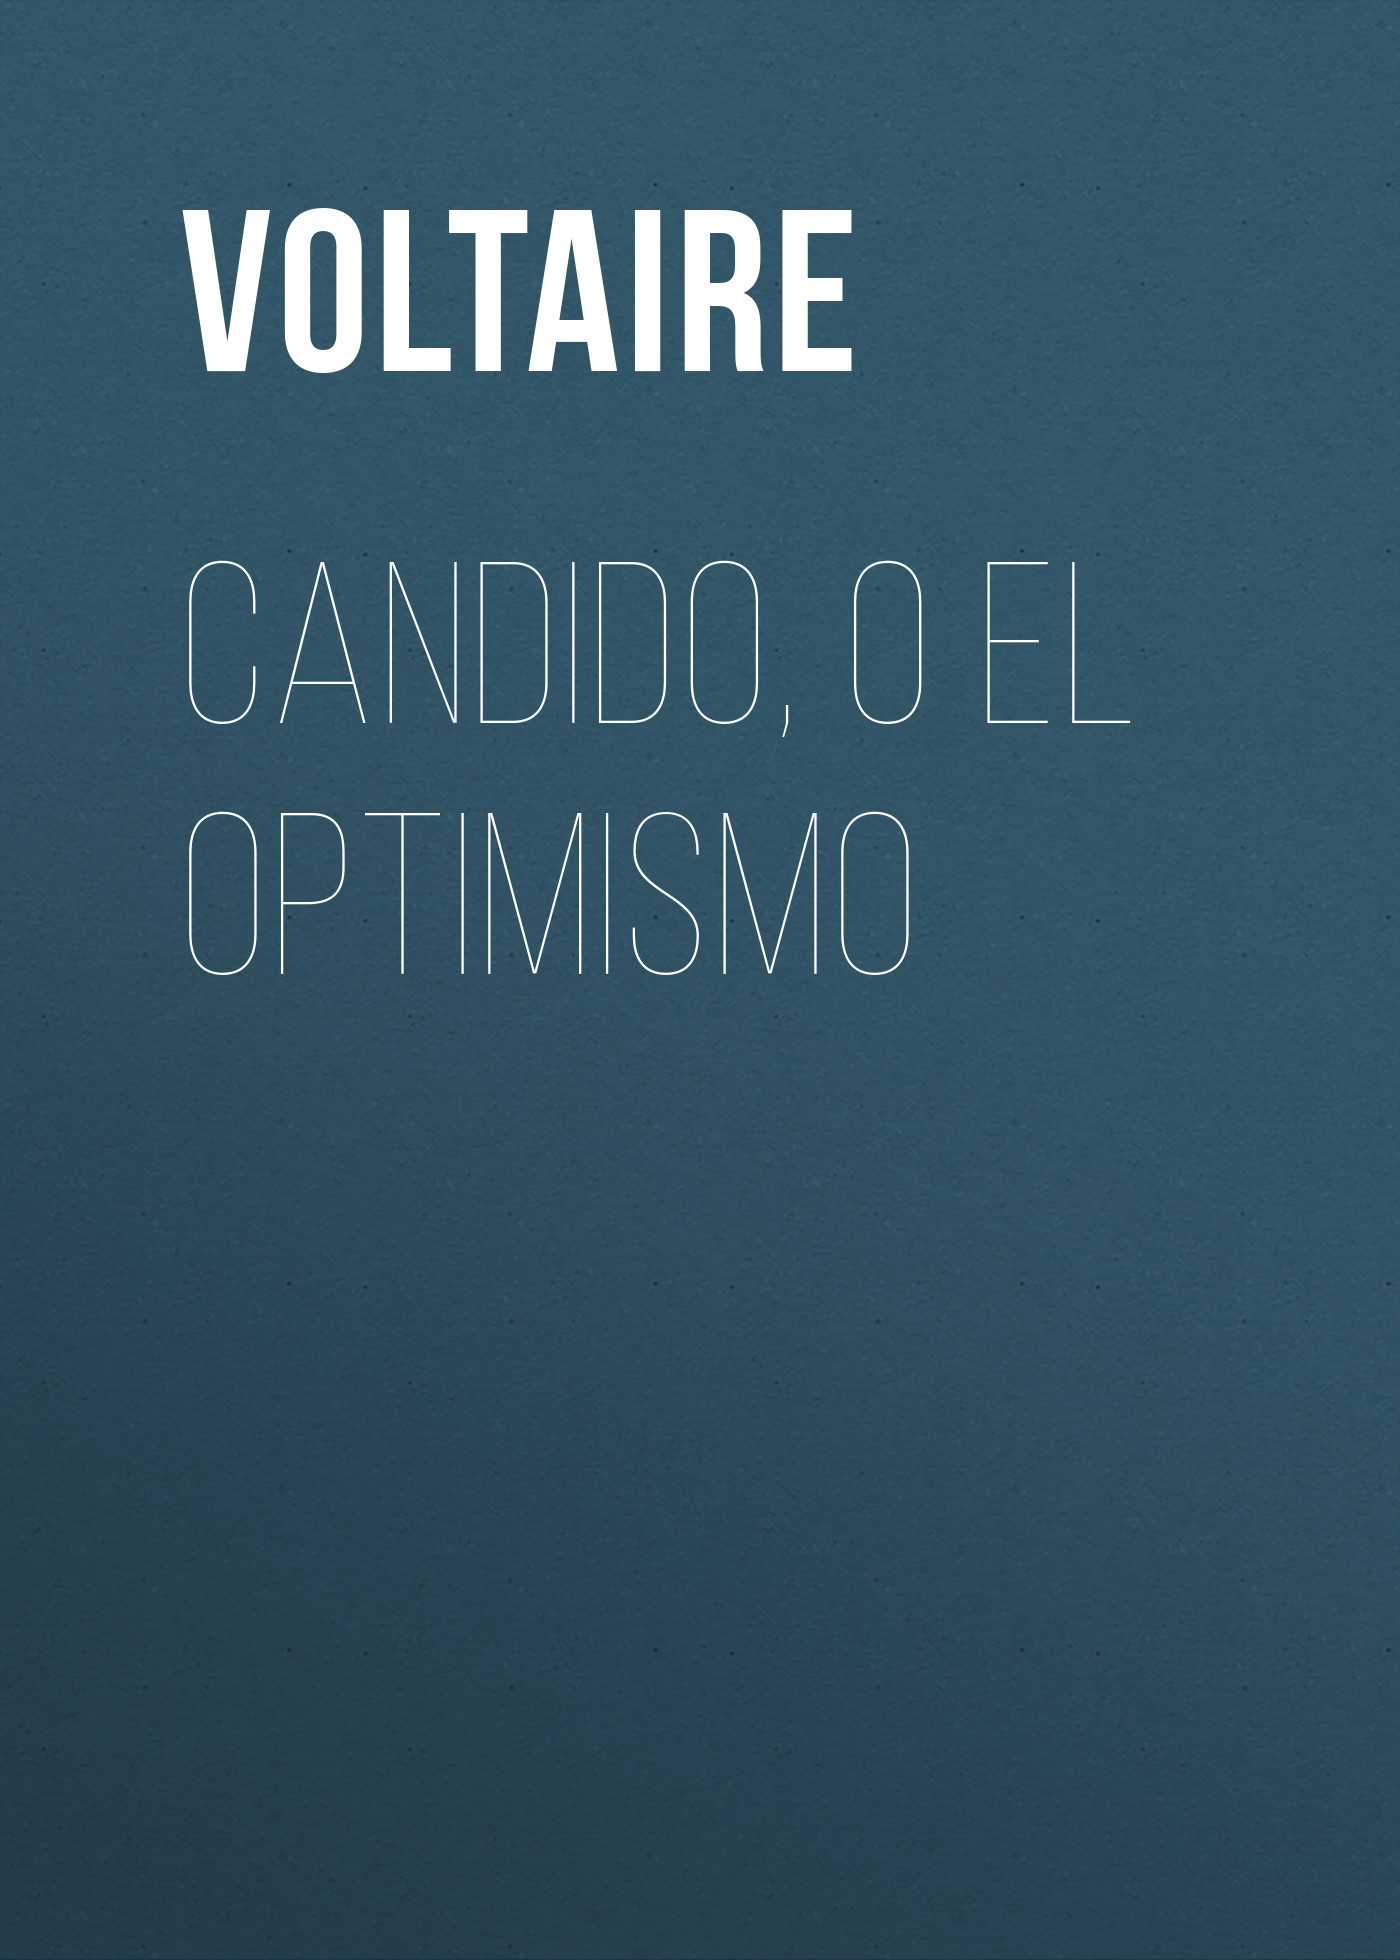 Книга Candido, o El Optimismo из серии , созданная  Voltaire, может относится к жанру Юмор: прочее, Литература 18 века, Зарубежная классика. Стоимость электронной книги Candido, o El Optimismo с идентификатором 25560916 составляет 0 руб.